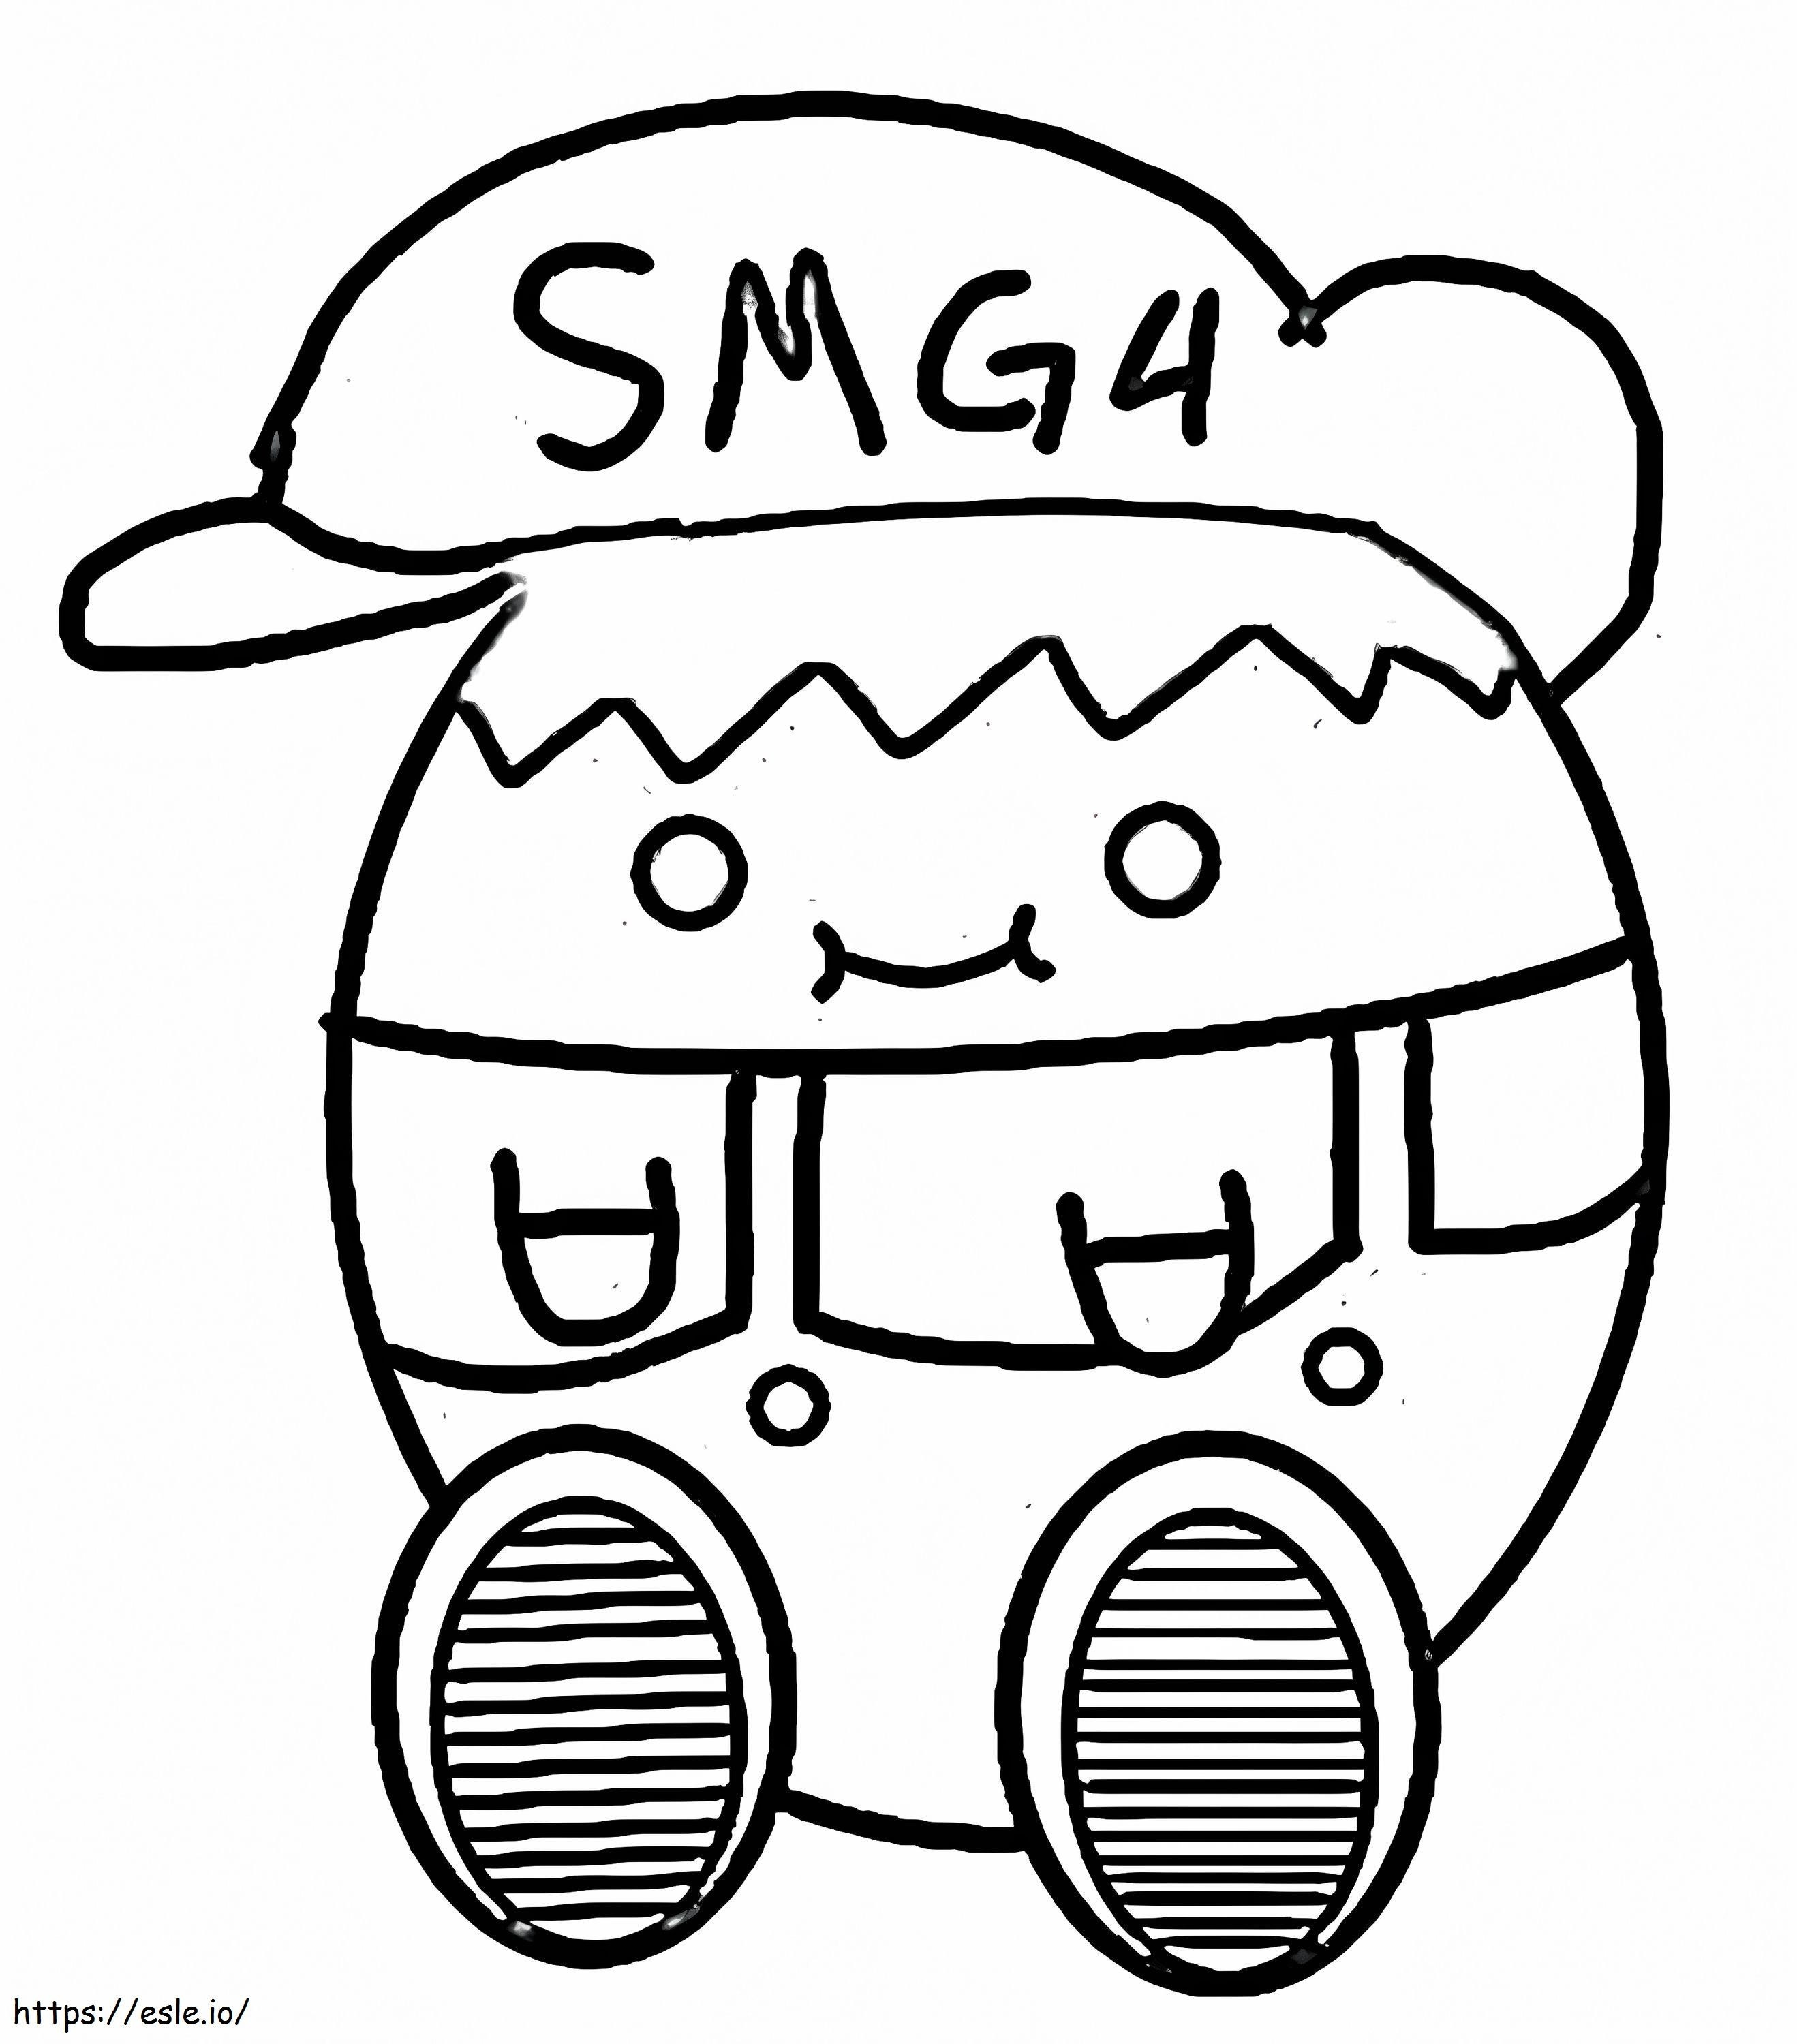 Free Printable Beeg SMG4 coloring page